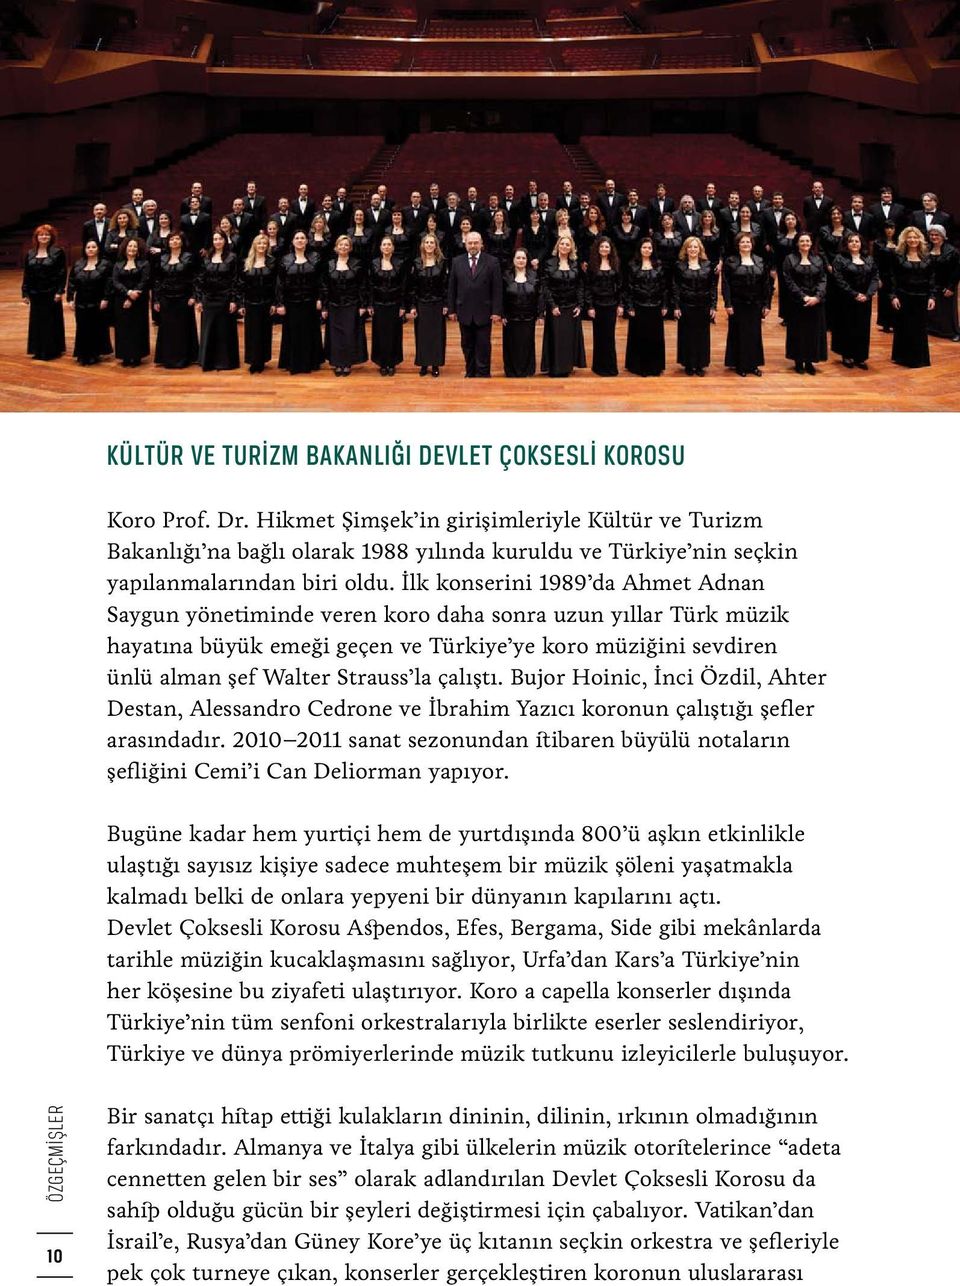 İlk konserini 1989 da Ahmet Adnan Saygun yönetiminde veren koro daha sonra uzun yıllar Türk müzik hayatına büyük emeği geçen ve Türkiye ye koro müziğini sevdiren ünlü alman şef Walter Strauss la